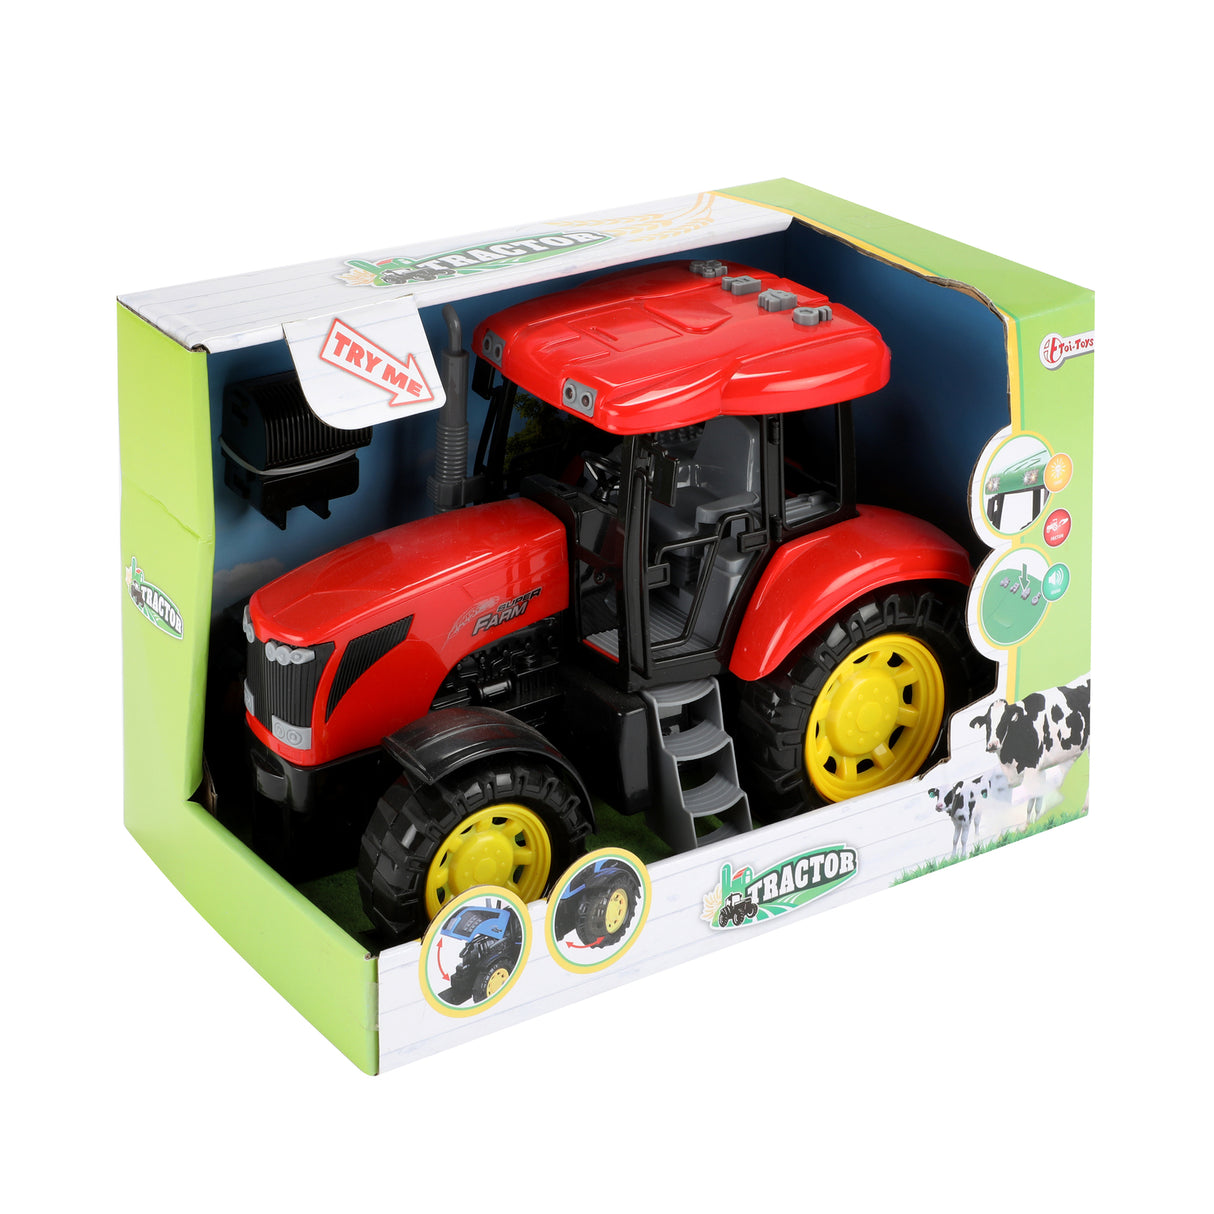 Traktor Spielzeug mit Licht, Sound und Friktionsmotor - Jetzt